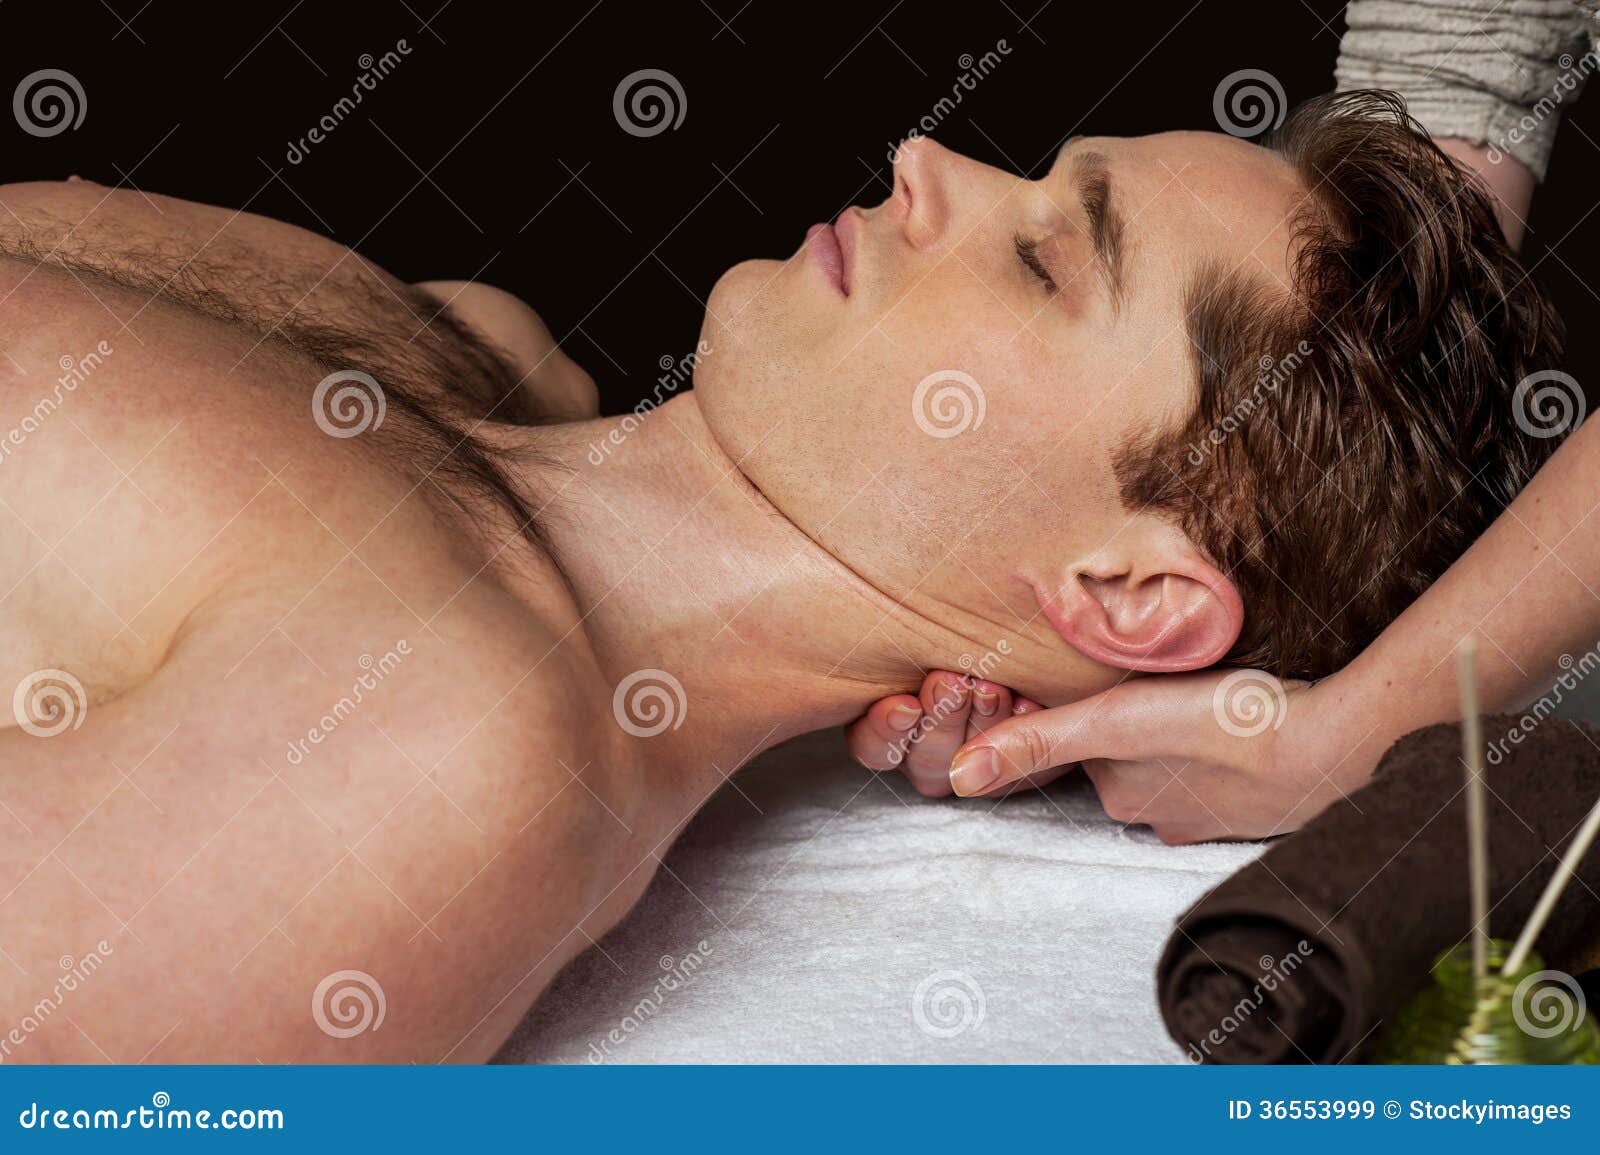 Hot Guy Massage Guy